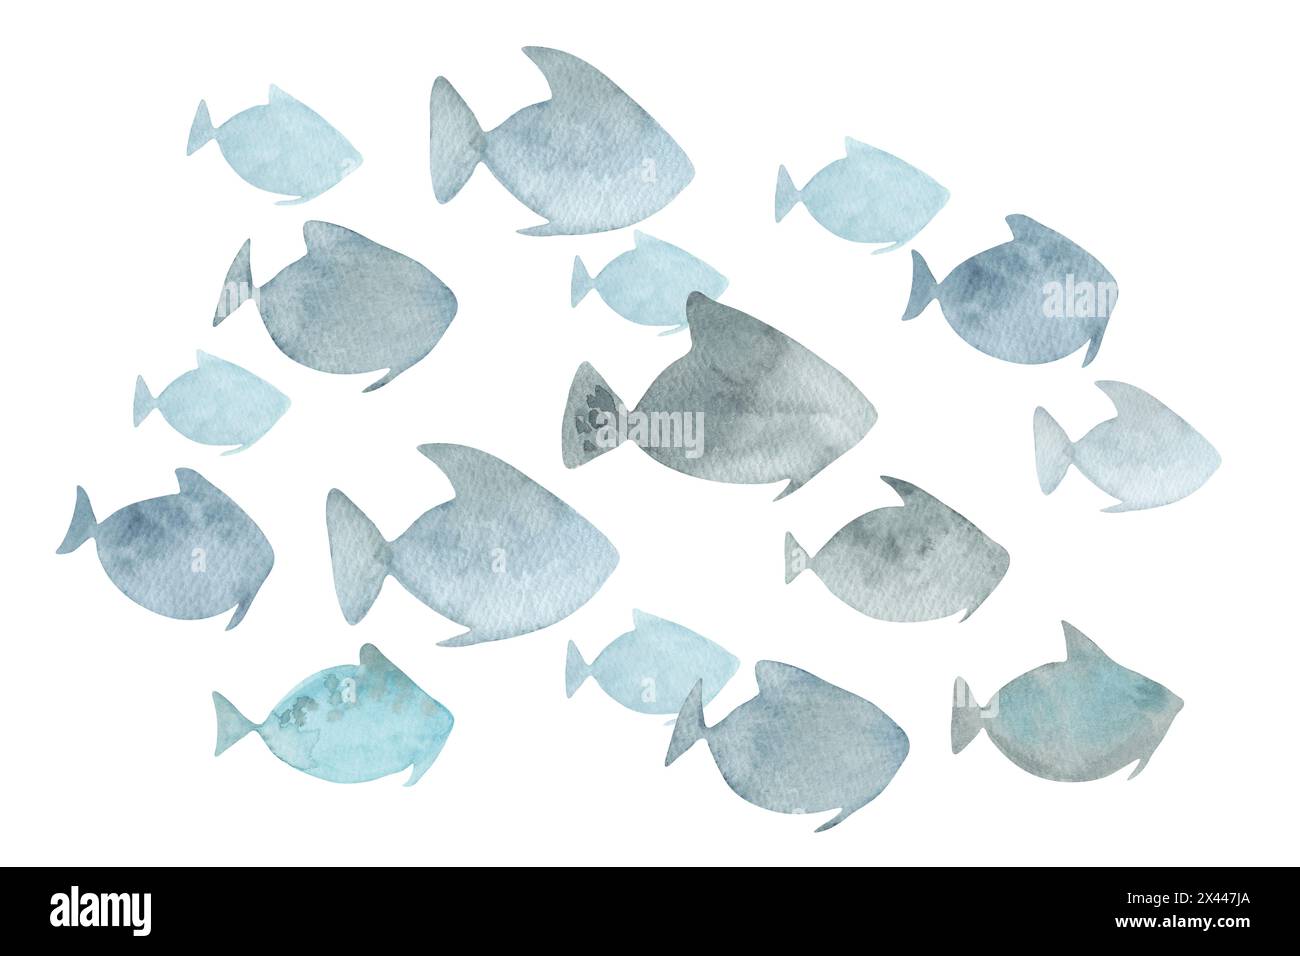 Scuola di pesce. Semplice illustrazione ad acquerello. Disegno isolato disegnato a mano. Clipart del mondo sottomarino. Abitanti acquatici di colore blu del mare Foto Stock